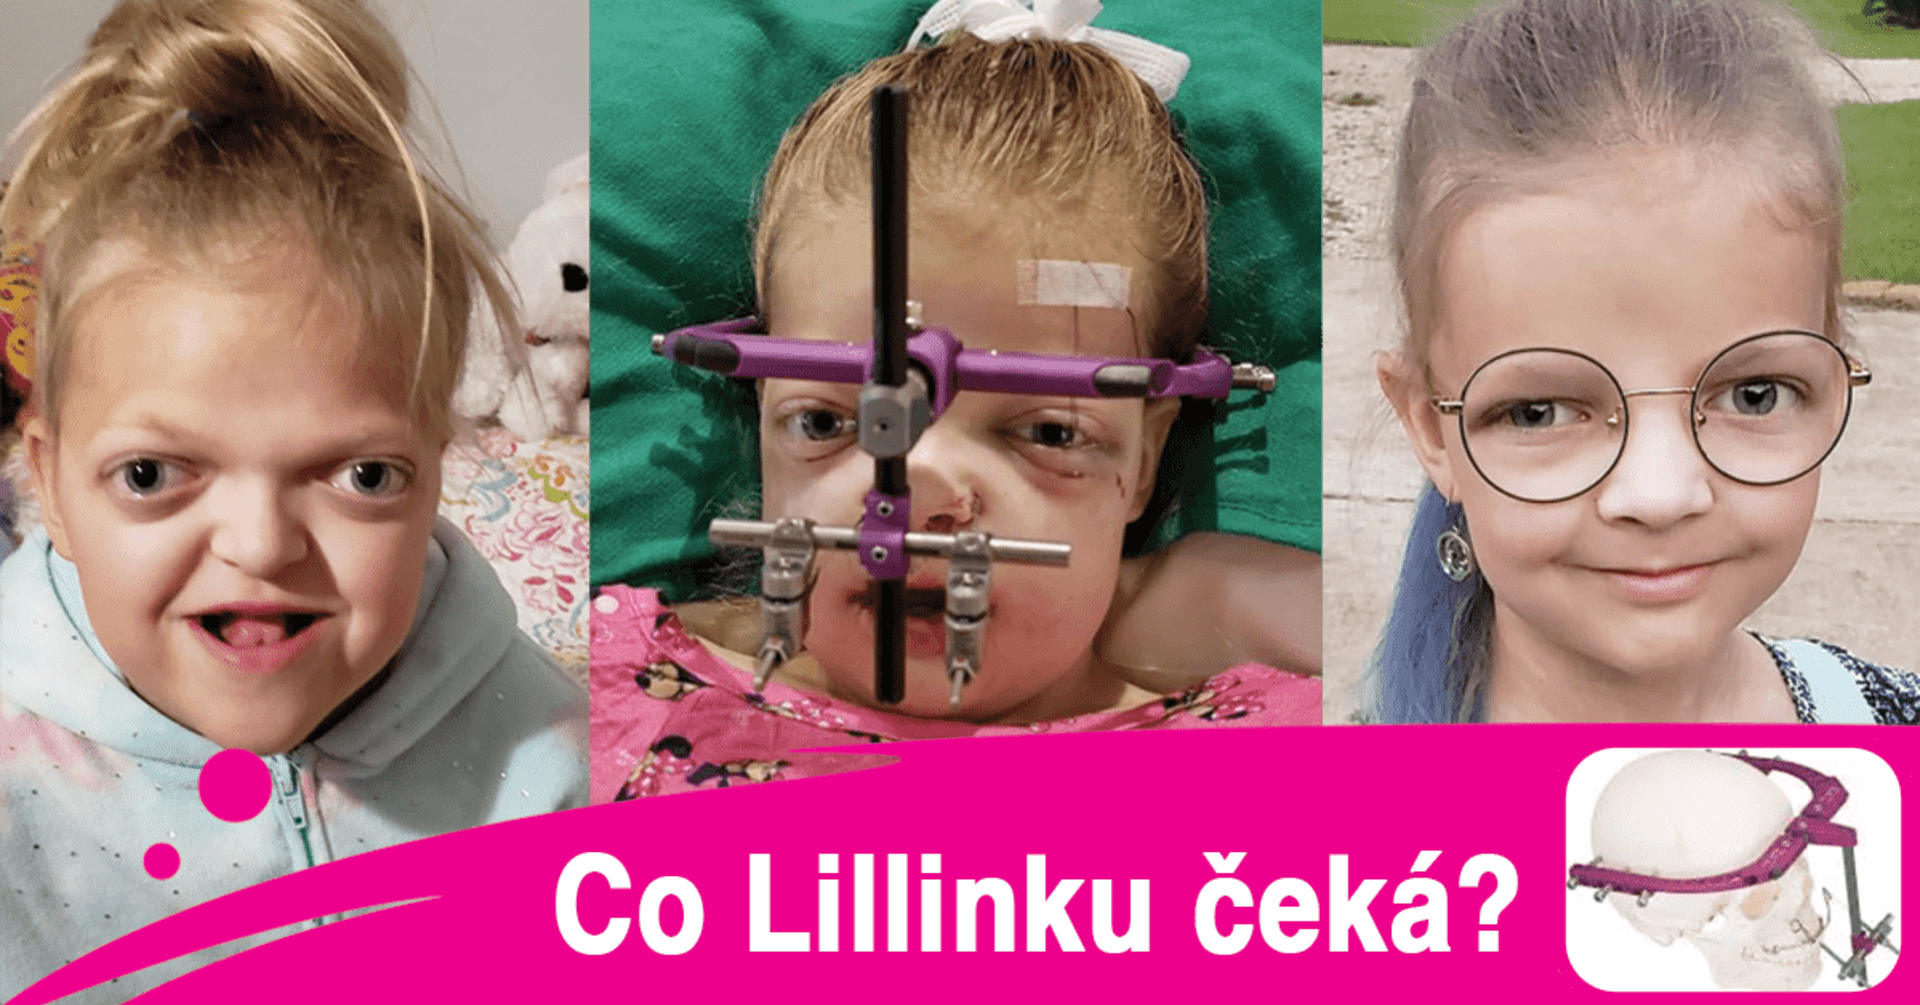 Operace v zahraničí může Lilli změnit život, s následnou léčbou však vyjde na zhruba deset milionů korun. Rodiče tak prosí o pomoc veřejnost. 